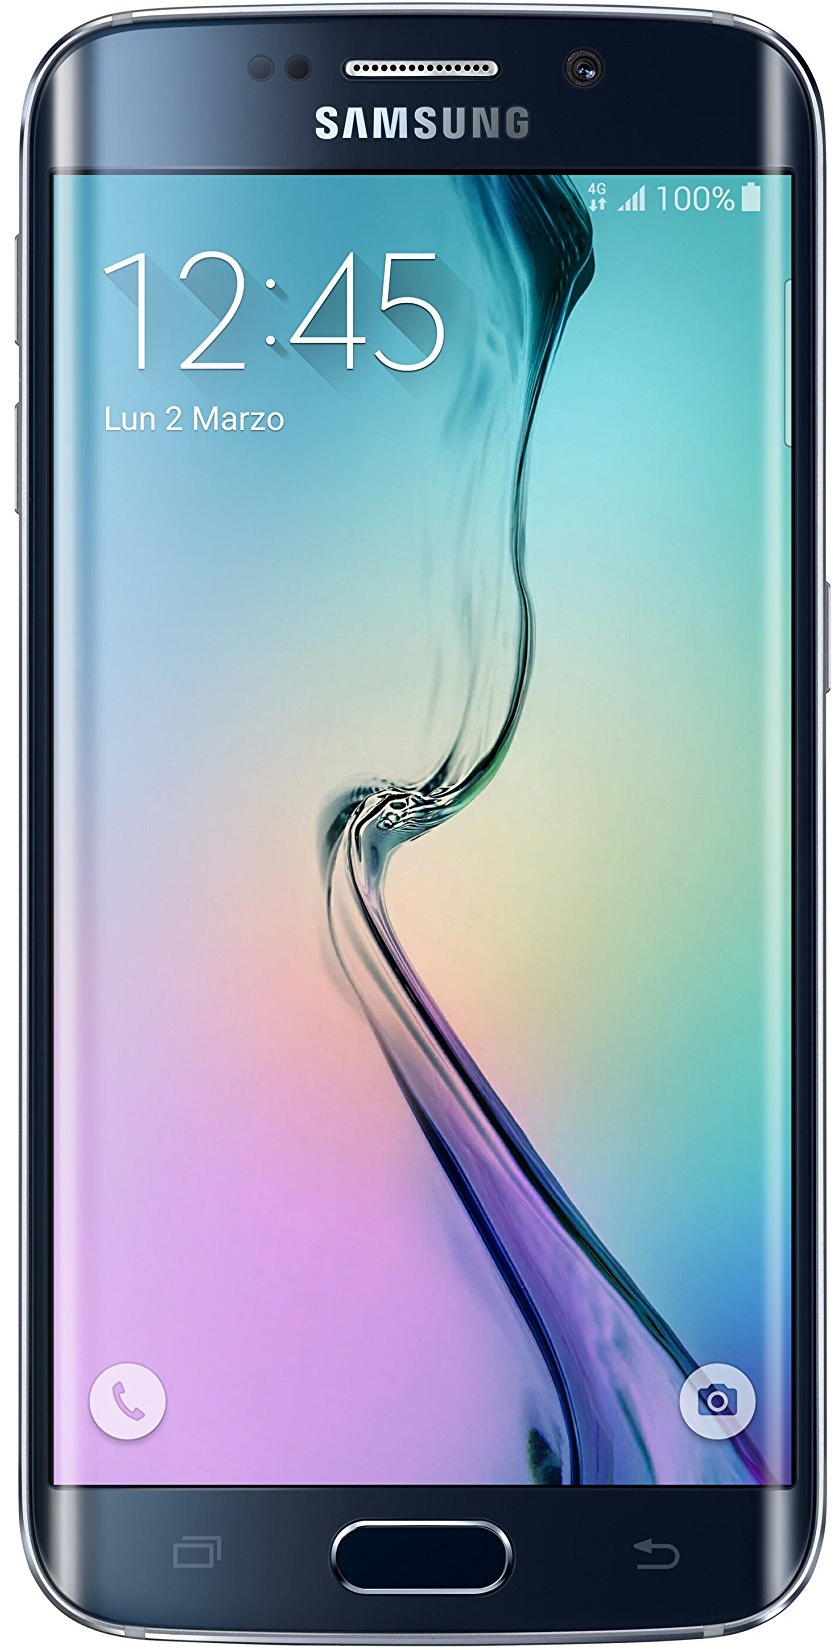 Samsung Galaxy S6 Edge, Smartphone ohne Vertrag, Android, Bildschirm 5,1 Zoll (13 cm), Kamera mit 16 MP, Quad-Core mit 2,1 GHz, 3 GB RAM